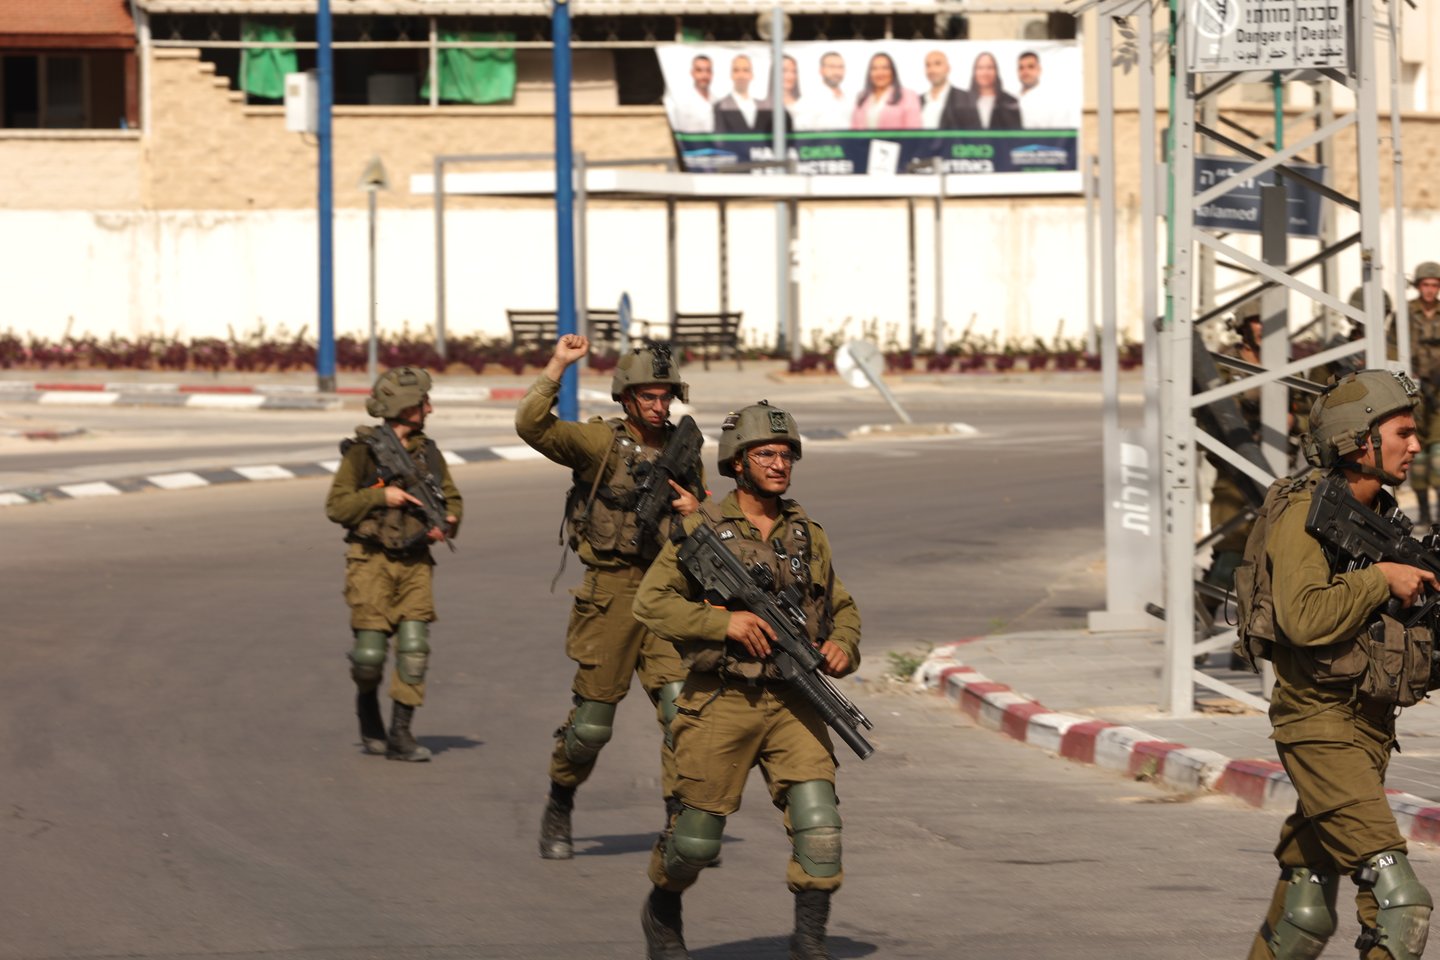 Įvykiai Izraelyje. Izraelio pareigūnai saugo teritoriją po kovotojų atakų.<br>Dpa-picture-alliance/Scanpix nuotr.